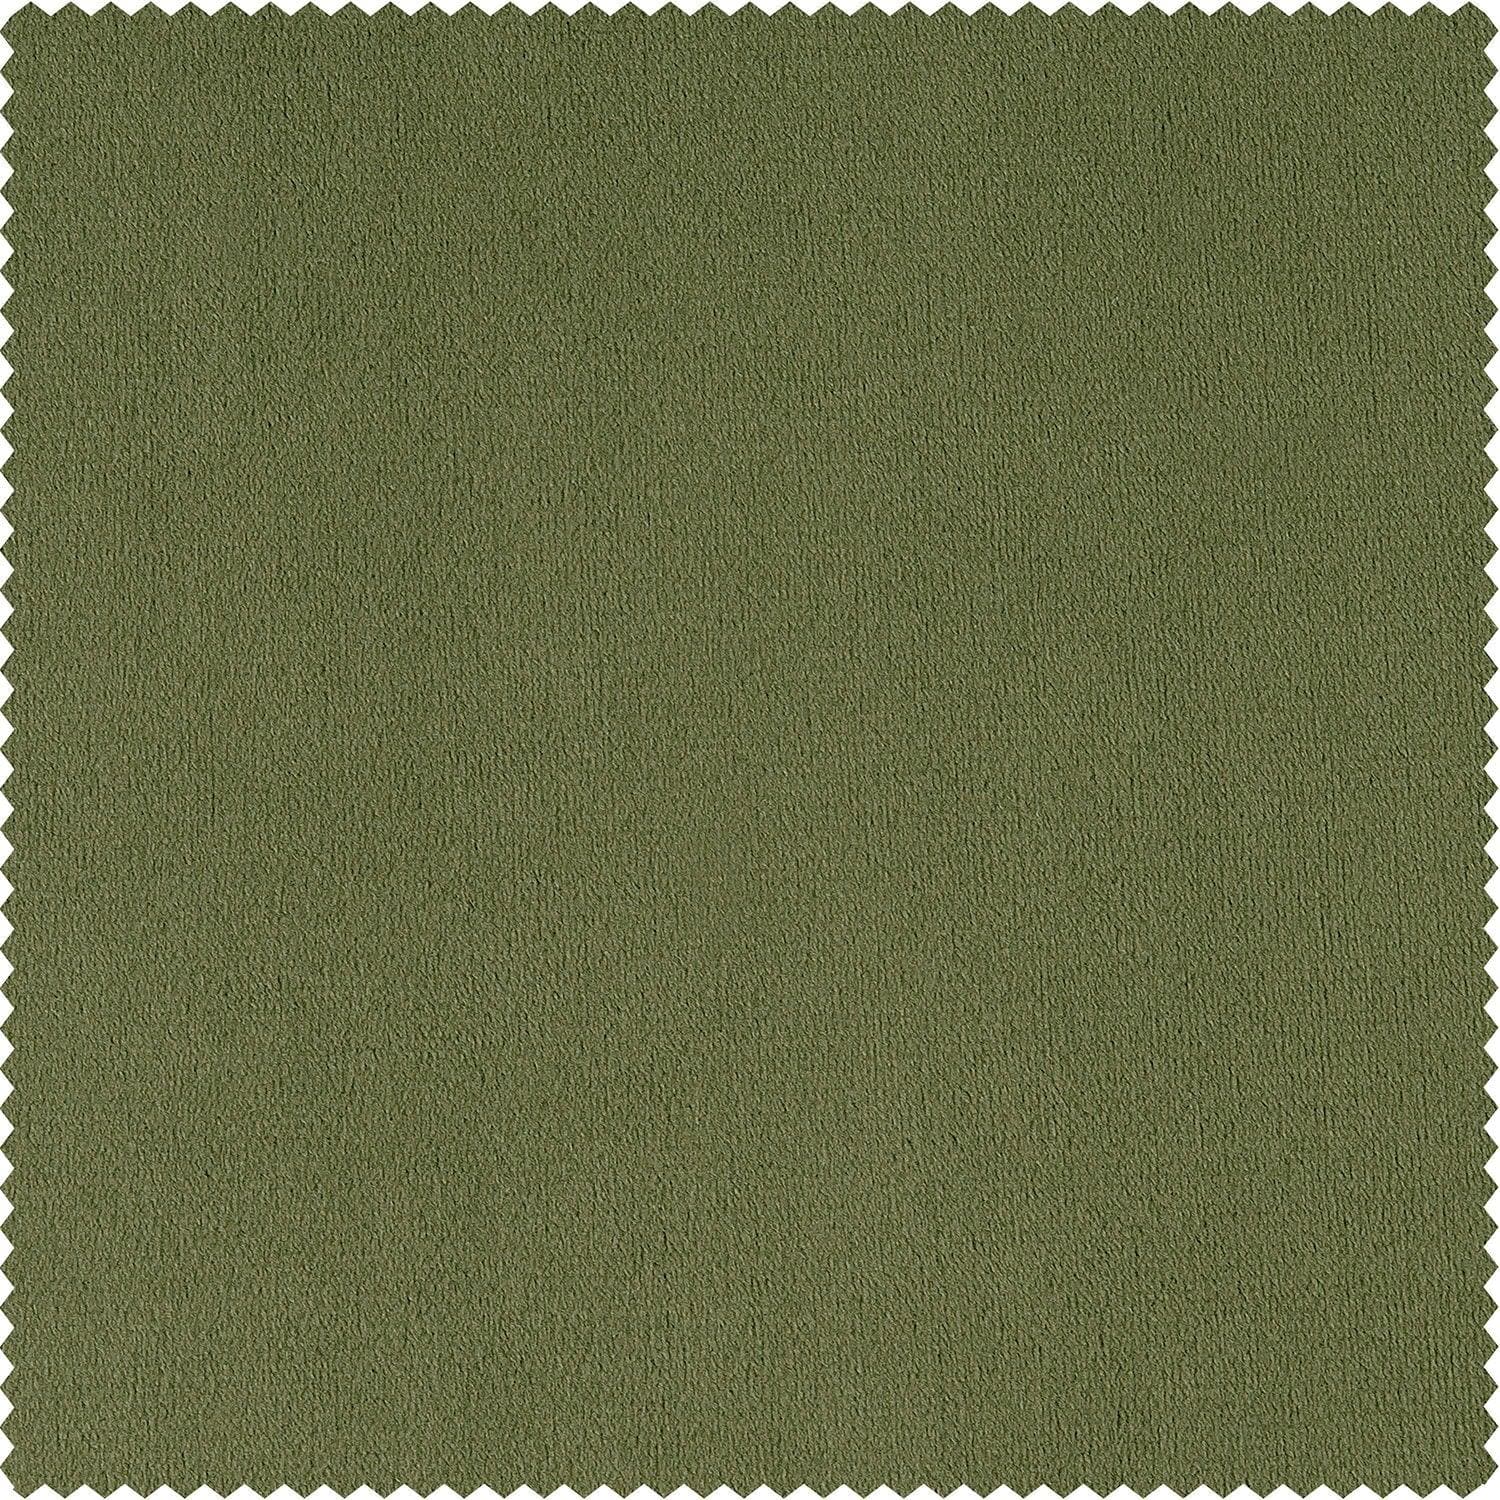 Basque Green Signature Velvet Cushion Covers - Pair